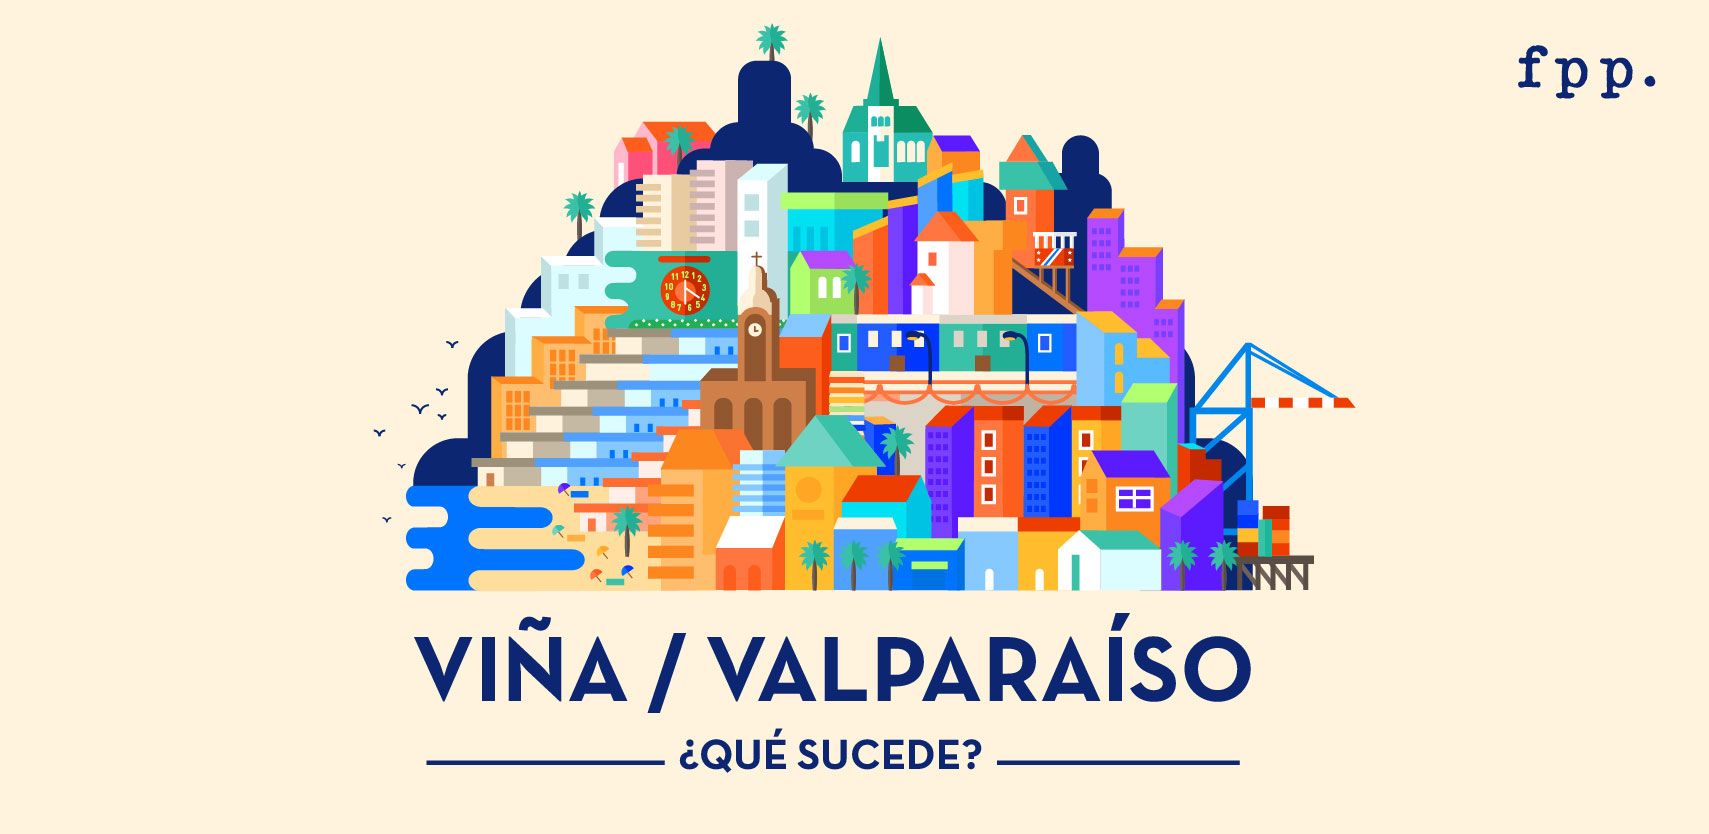 Foro: Viña / Valparaíso ¿Qué sucede?